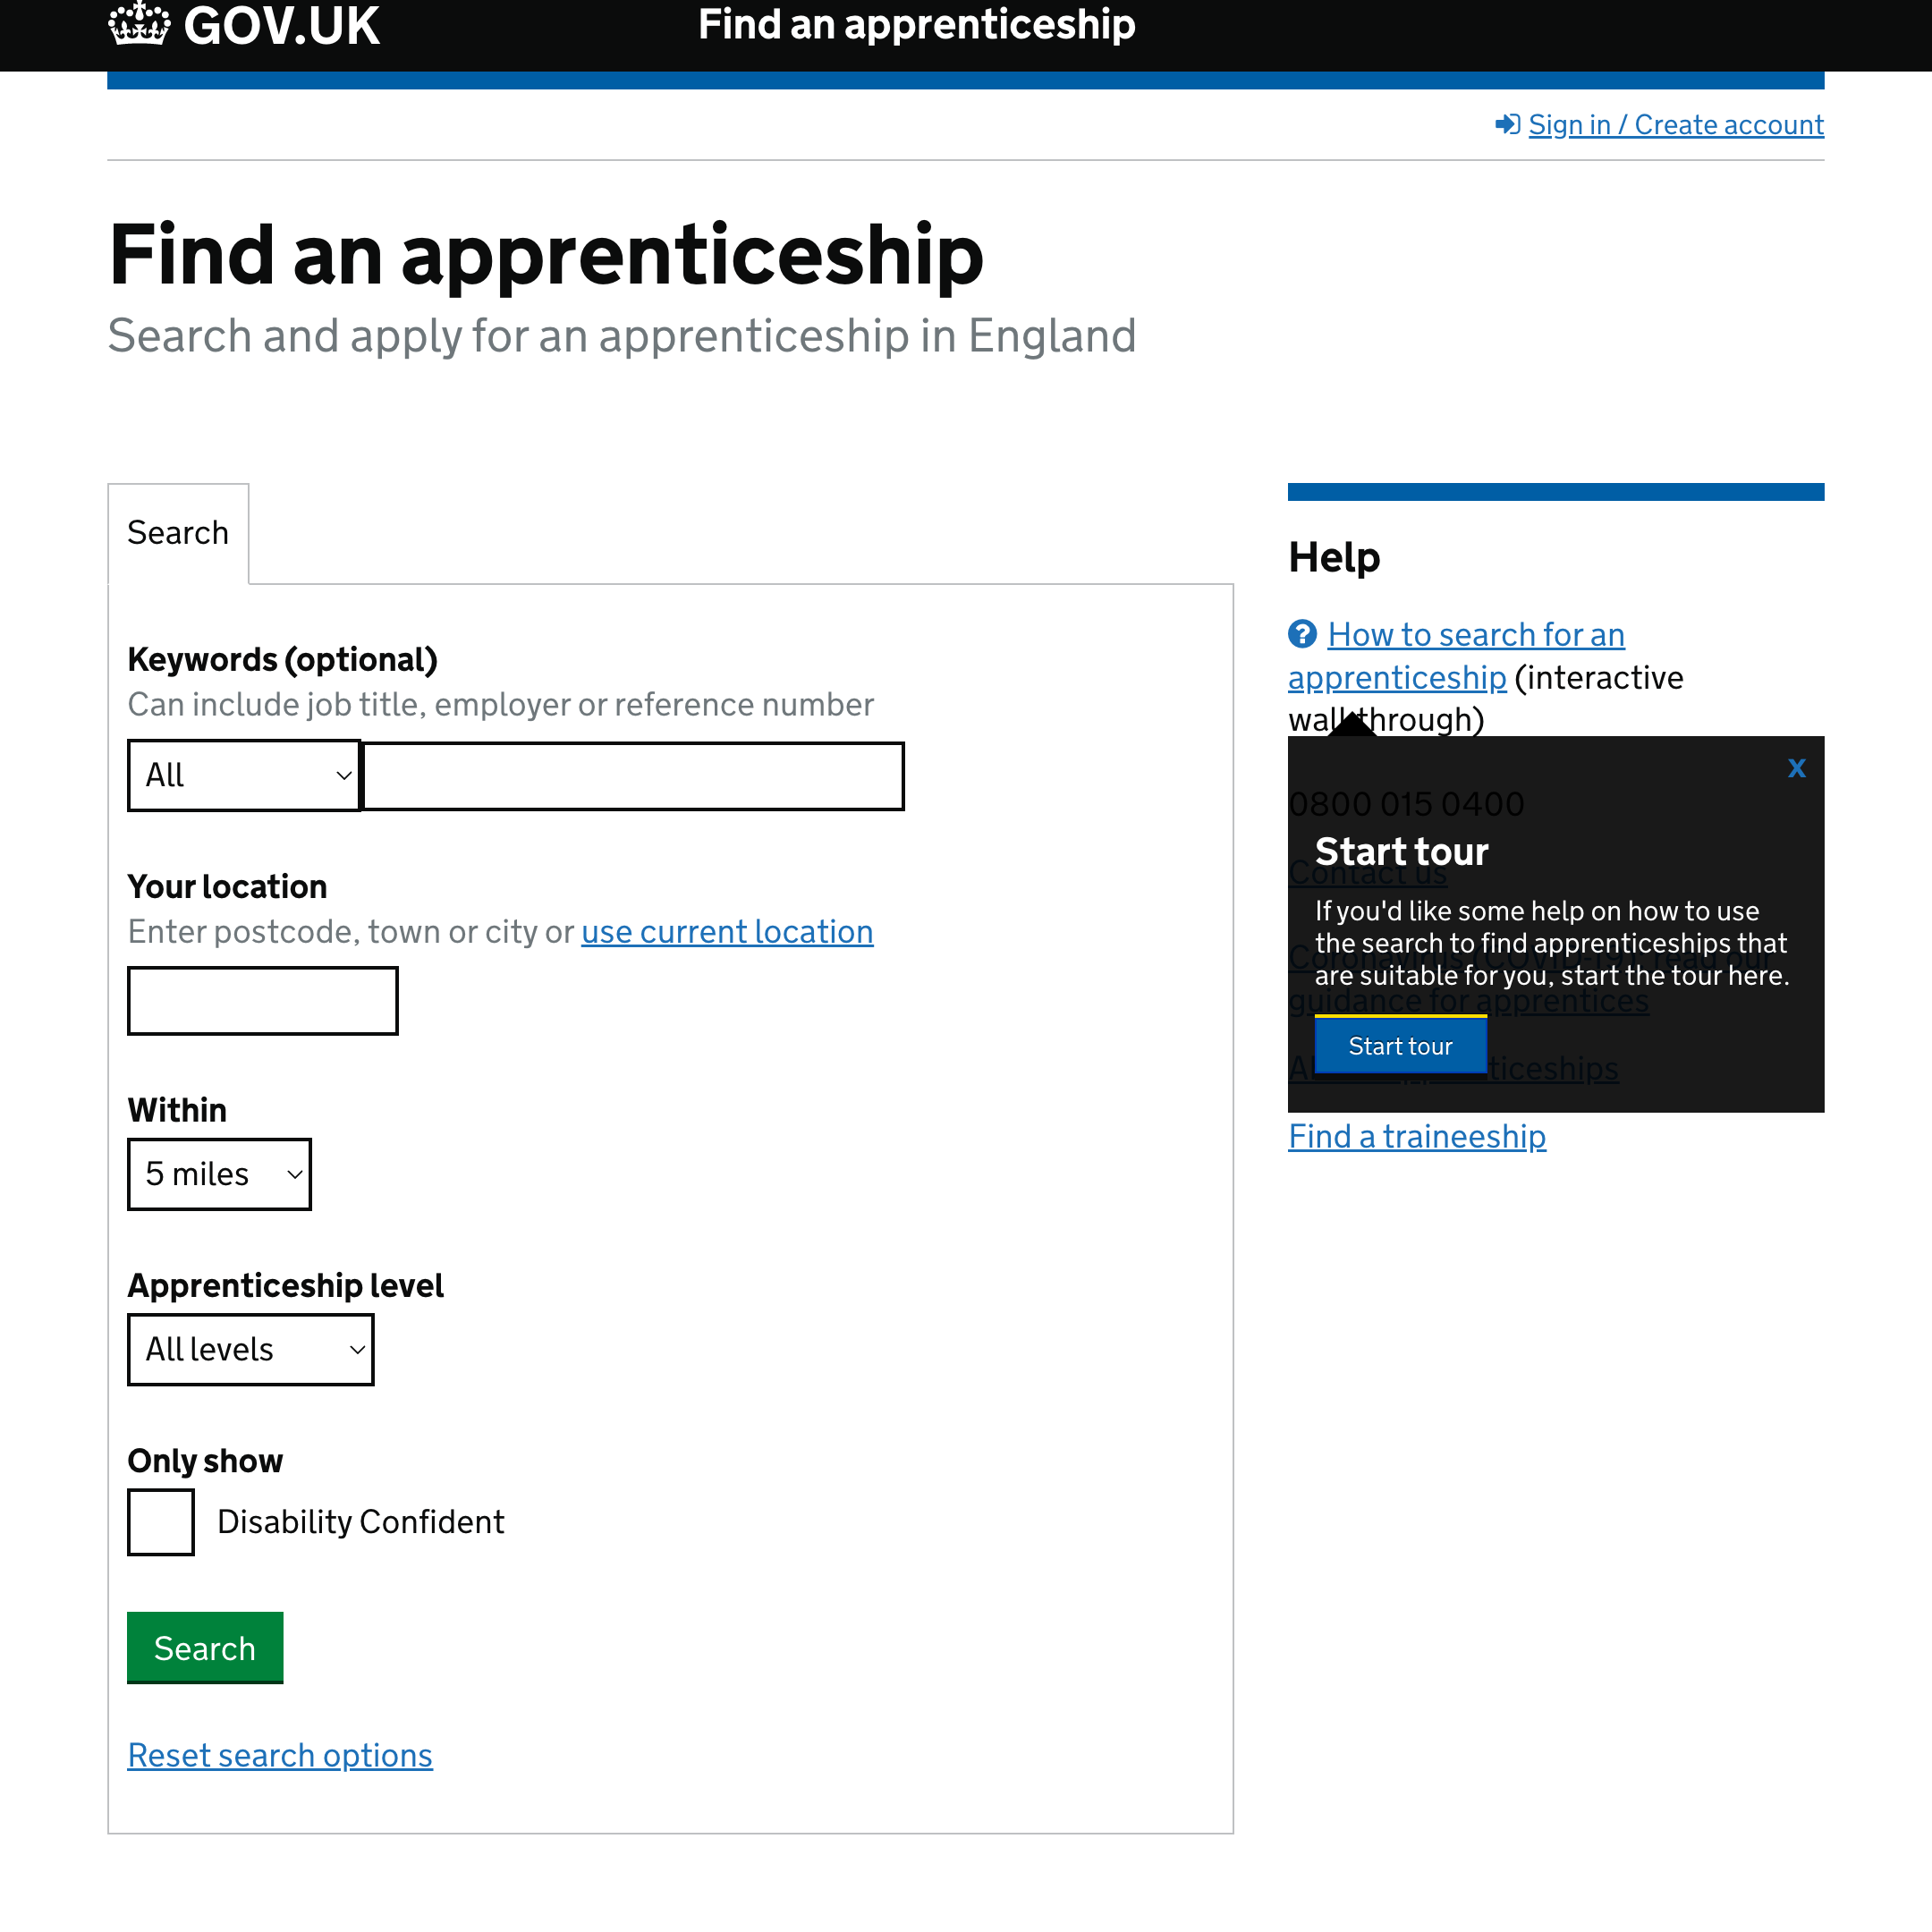 Find an apprenticeship